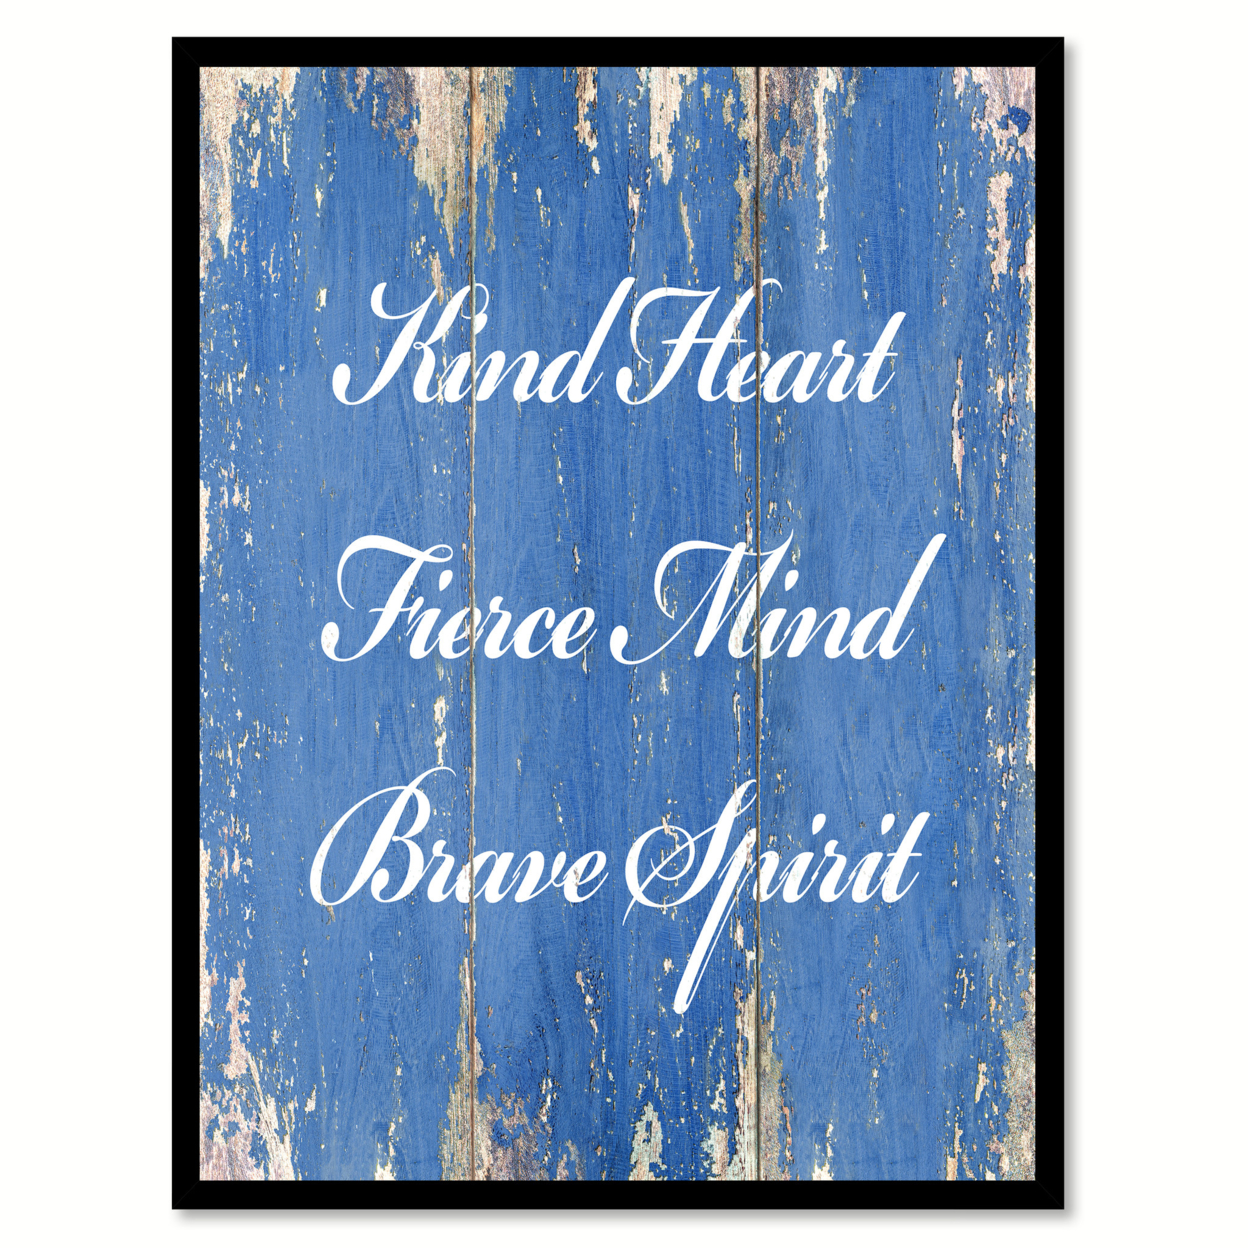 Kind heart fierce mind brave spirit inspirational Vector Image